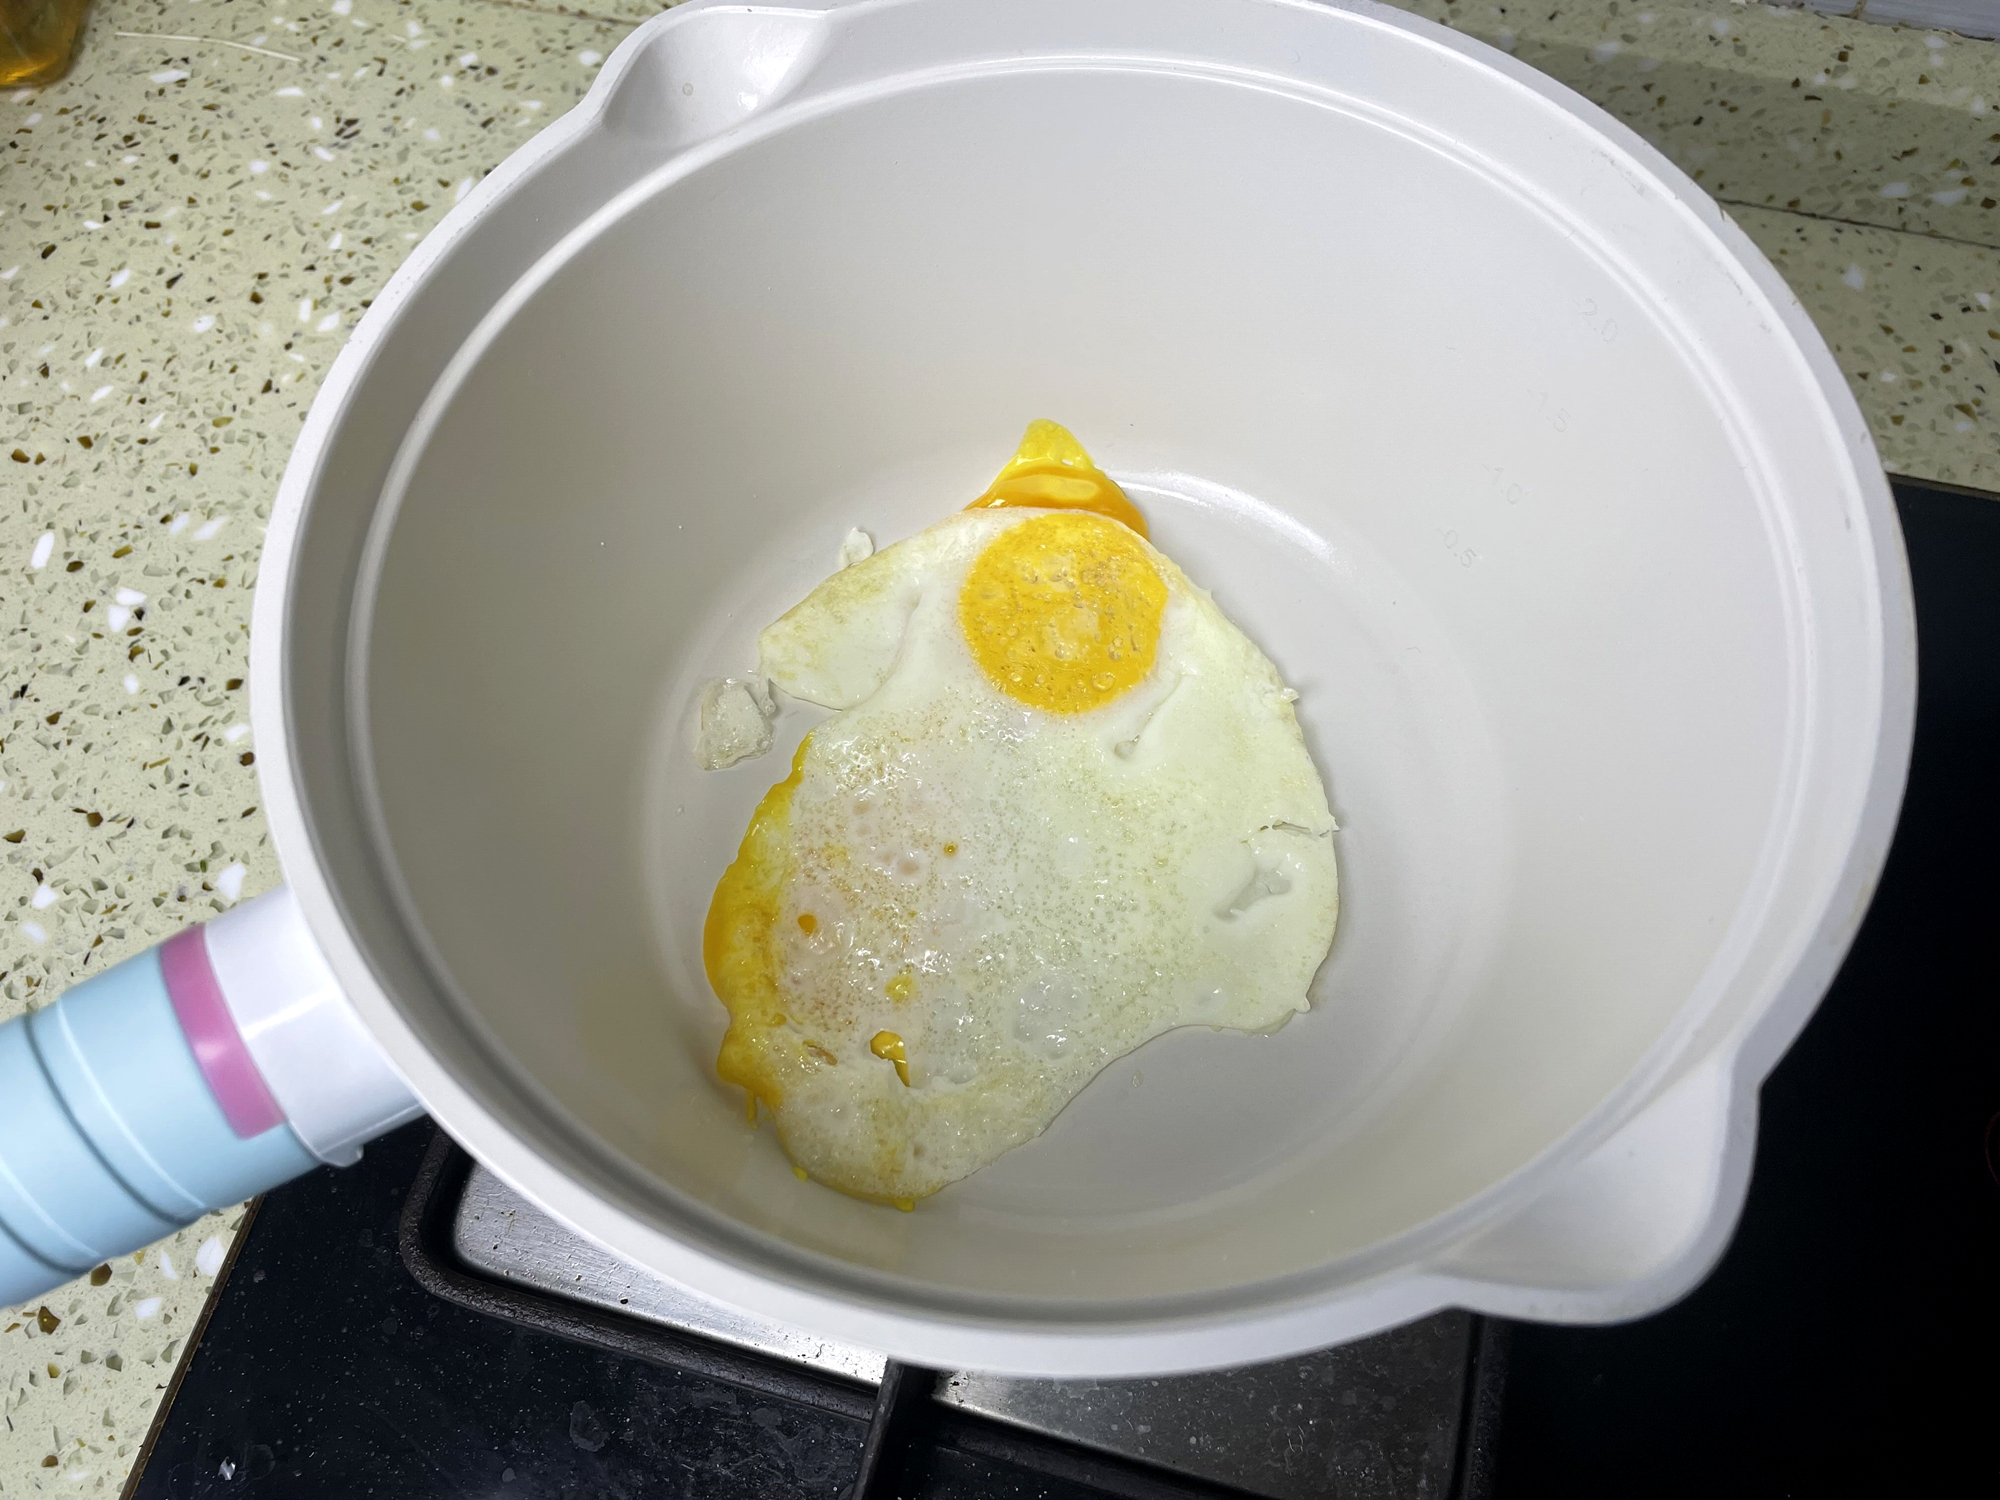 煎蛋也能漂移，帝伯朗宝宝多用辅食锅